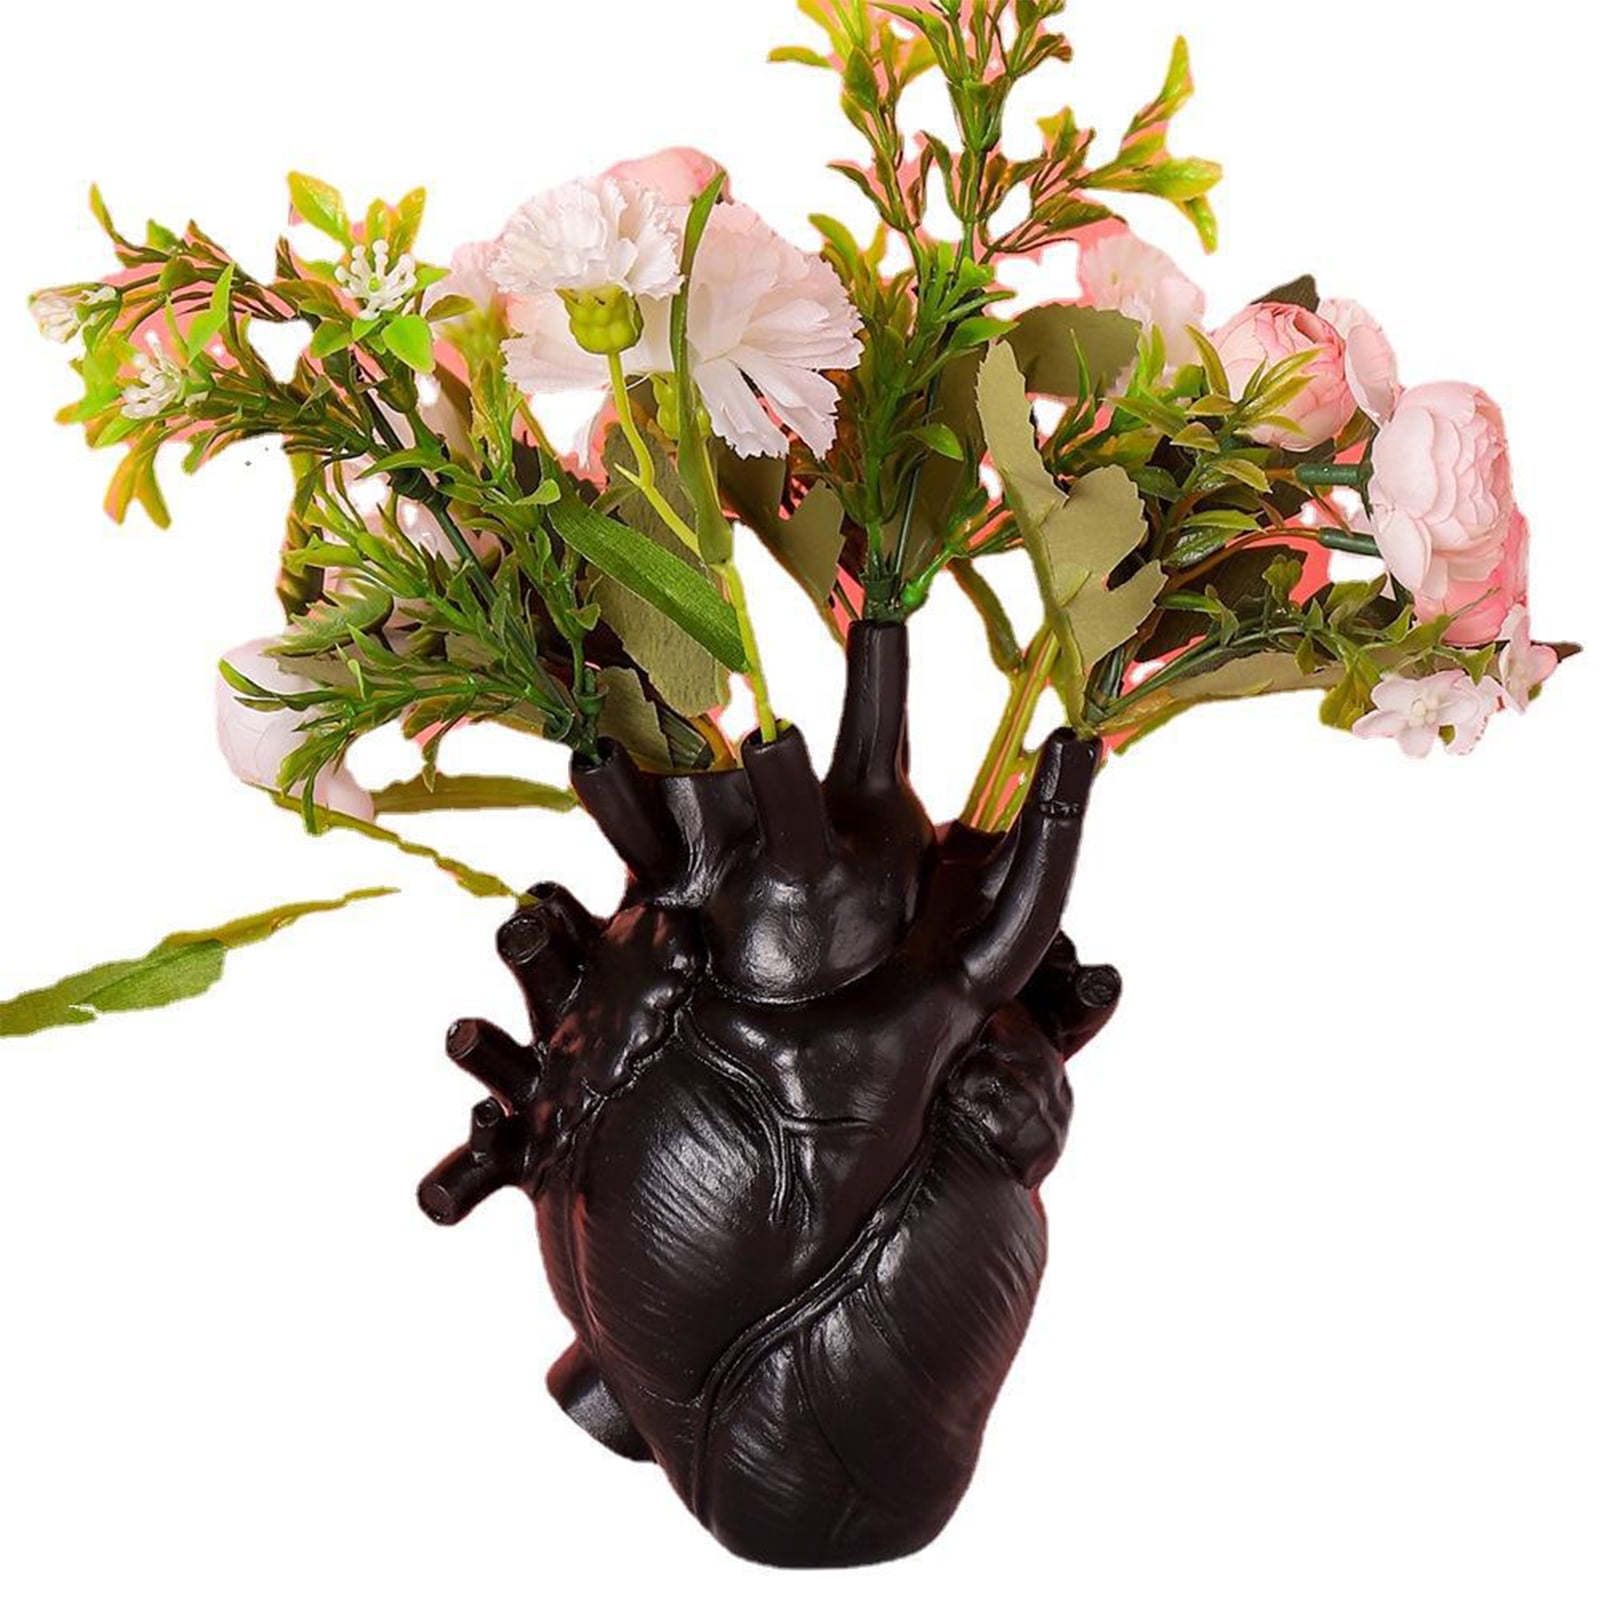 Anatomical Heart Vase Resin Flower Pot Desktop Ornament Home Shelf Table Decor